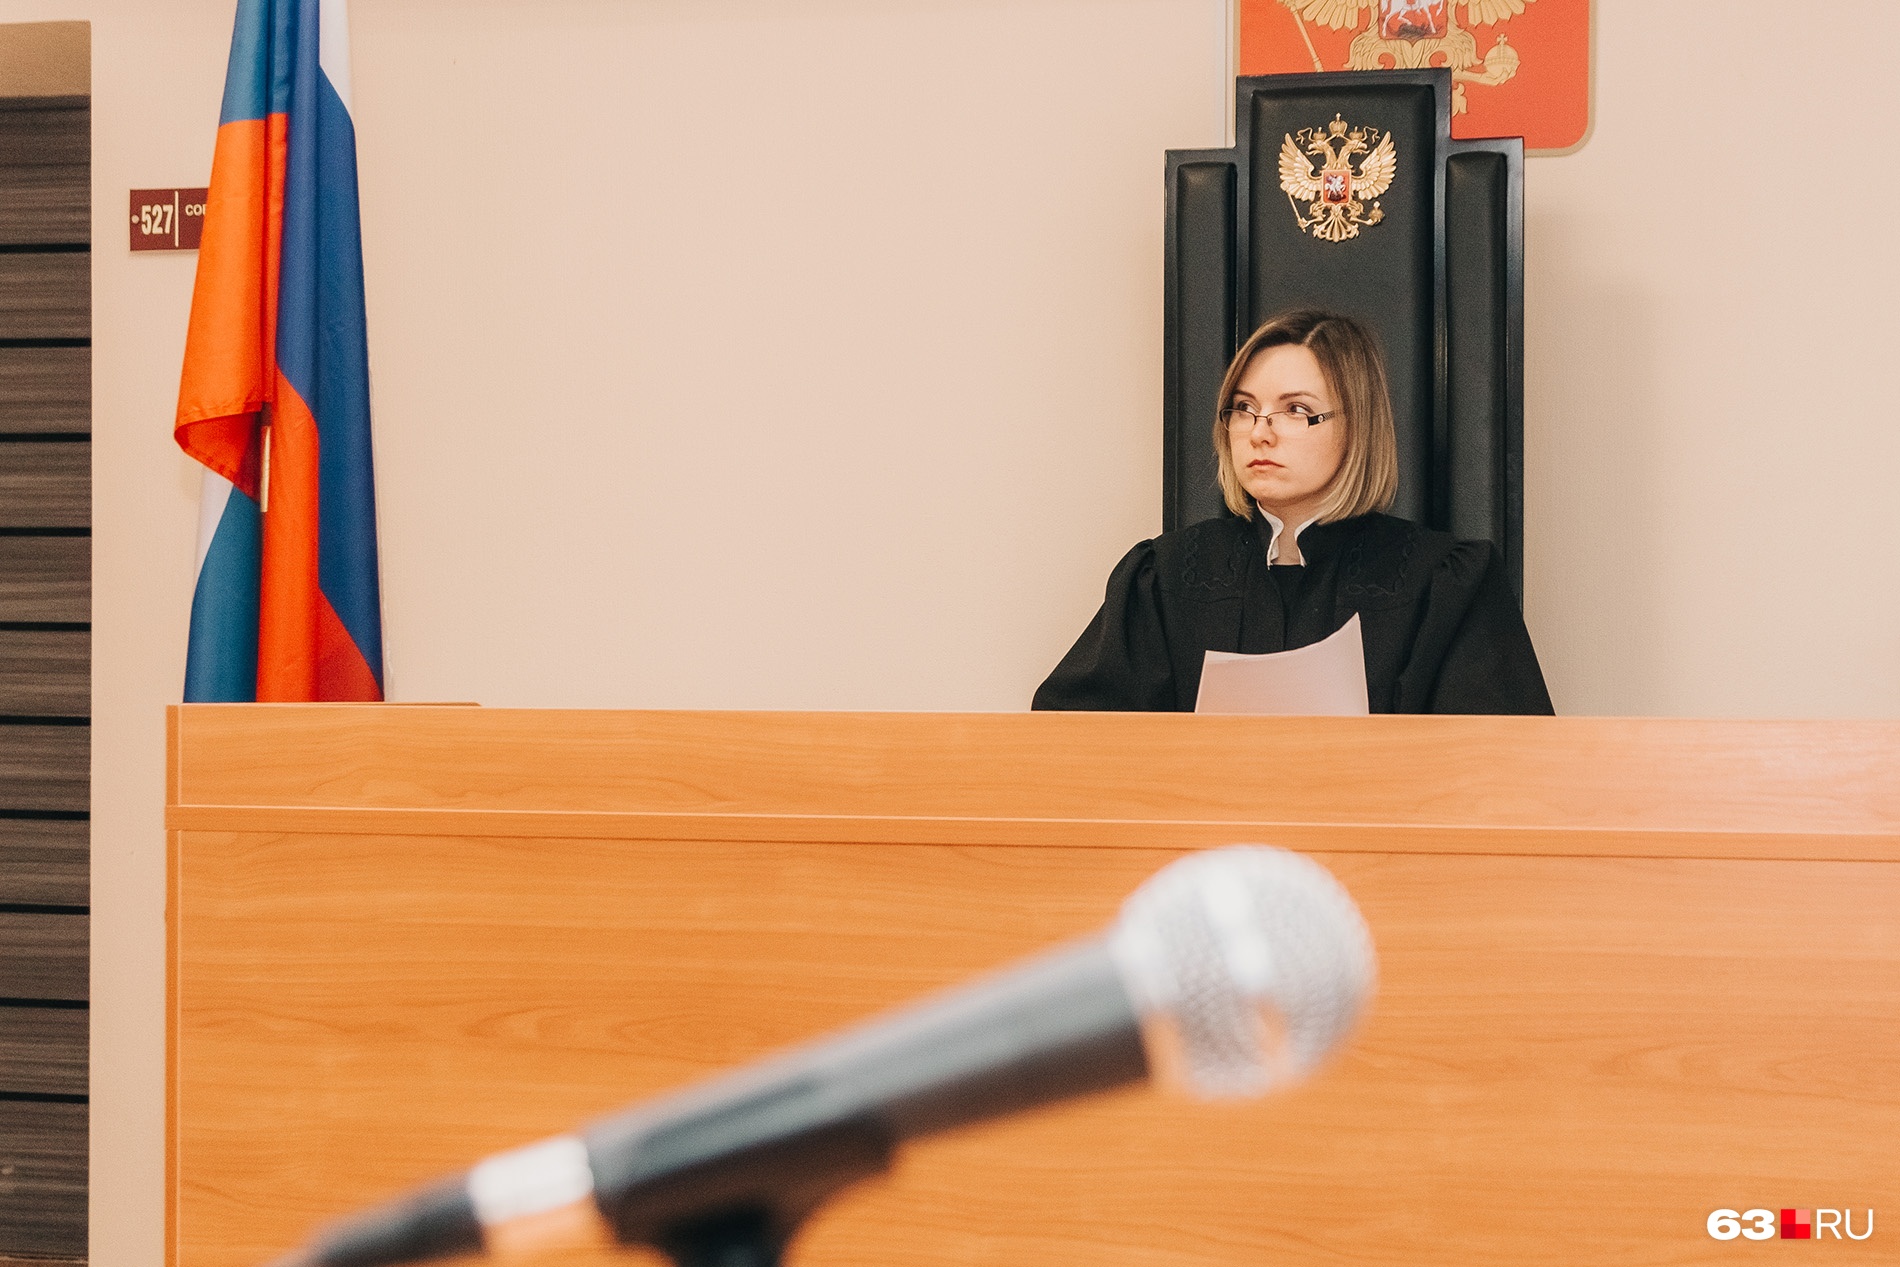 фотографии судьей самарского областного суда